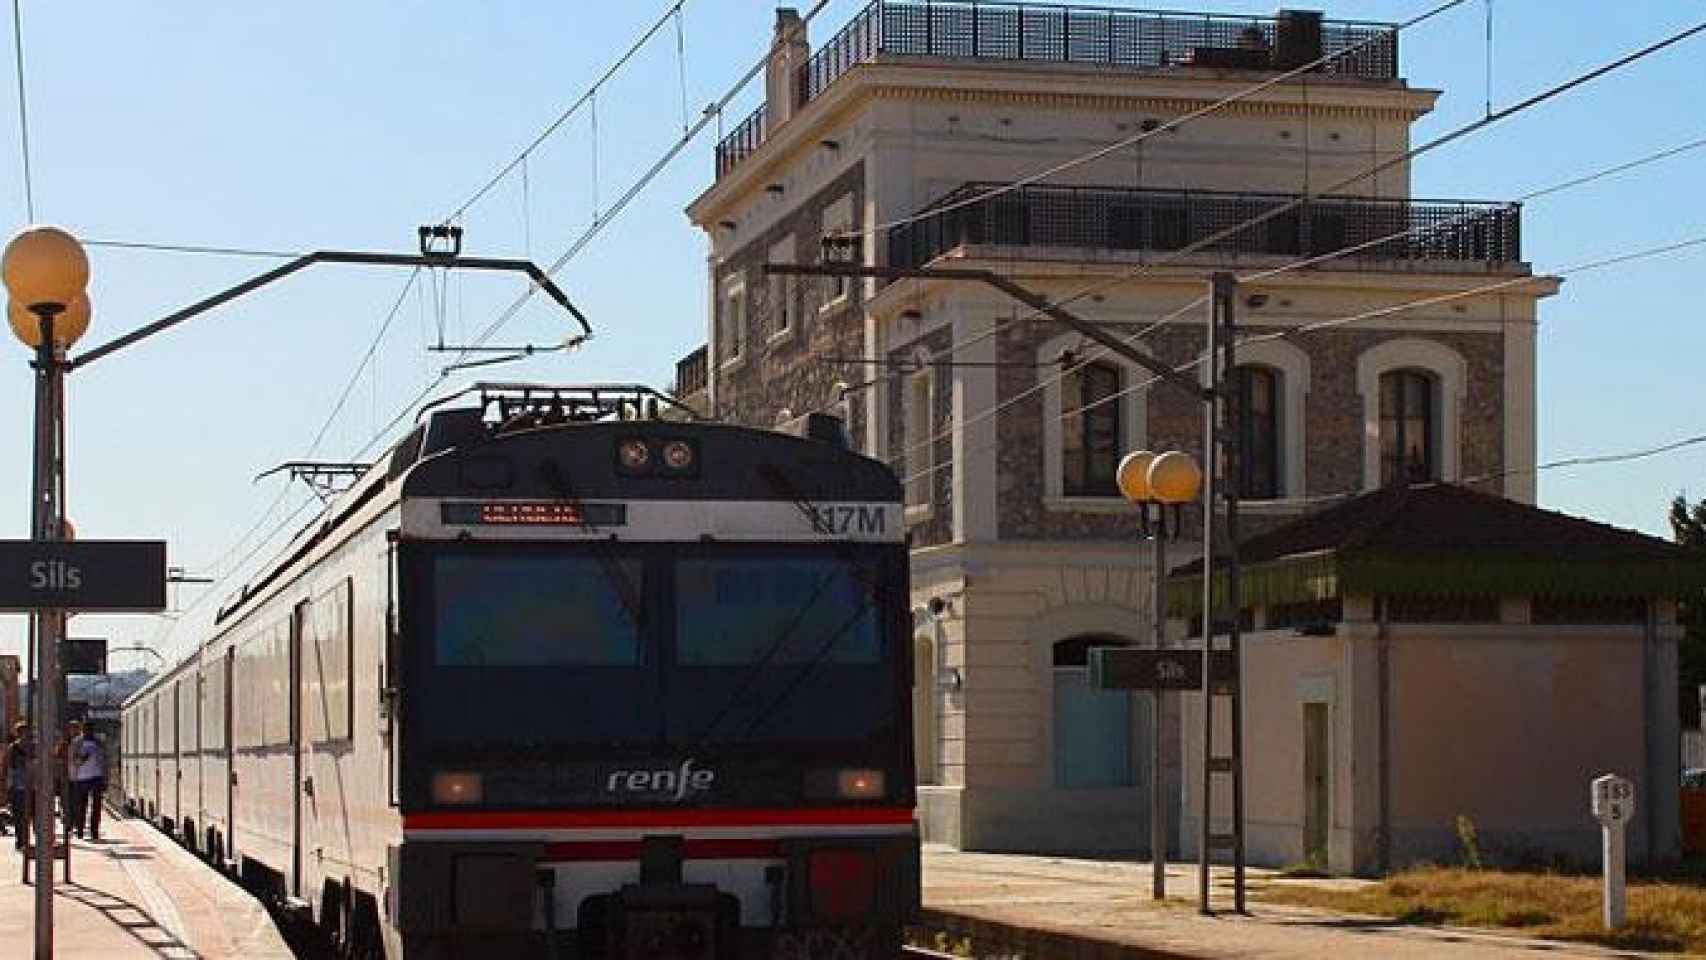 Estación de tren de Sils (Girona) donde fue encontrado el hombre muerto por una pulañada / JORDI VERDUGO